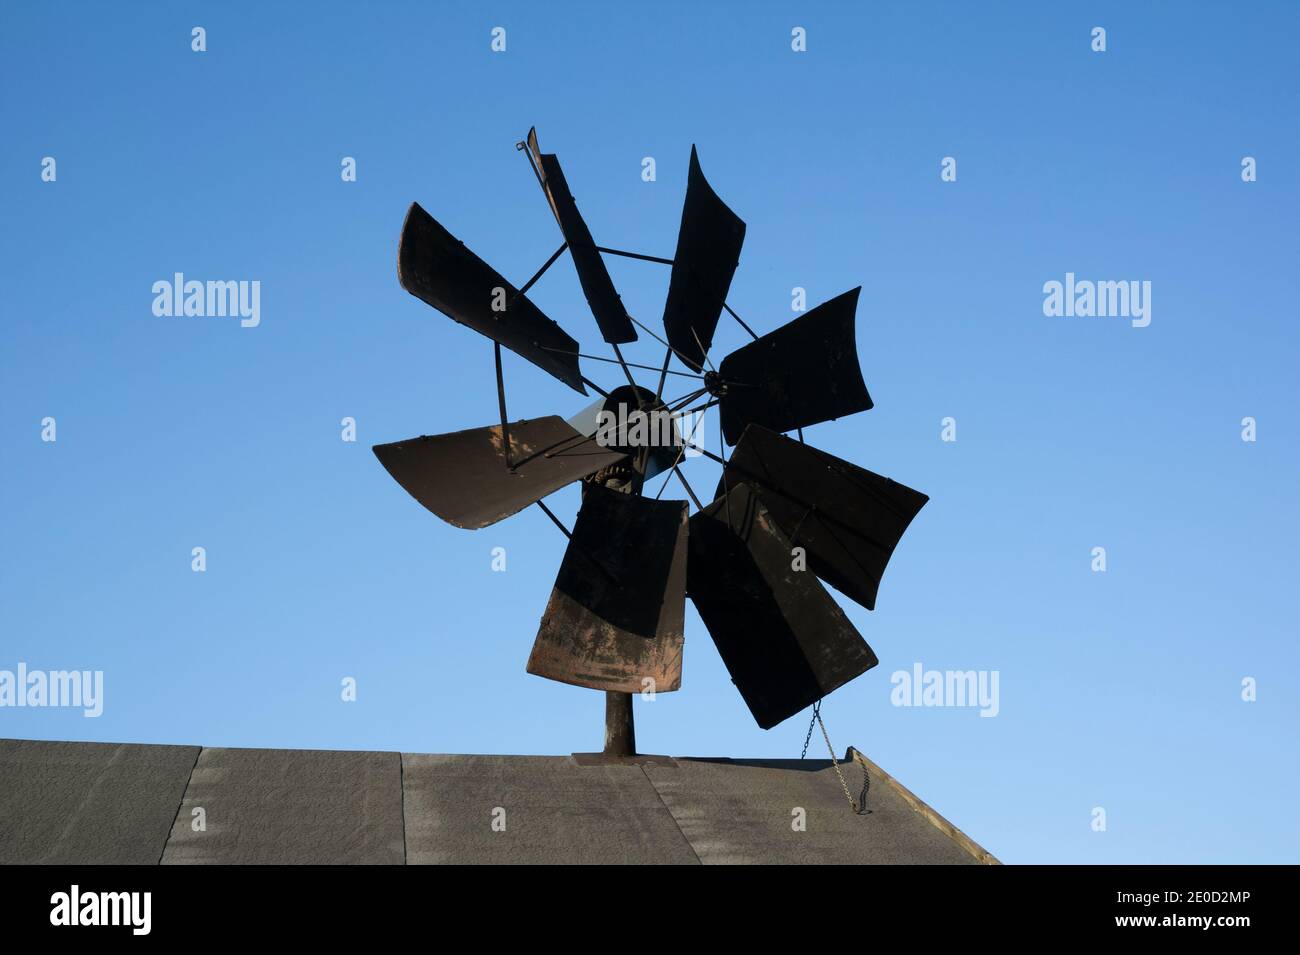 Alte verlassene Windmühle - Detail von Propellor und Segel. Gerät, Ausrüstung, Mechanik und Technik zur Erzeugung erneuerbarer Energie aus Windenergie. Details Stockfoto